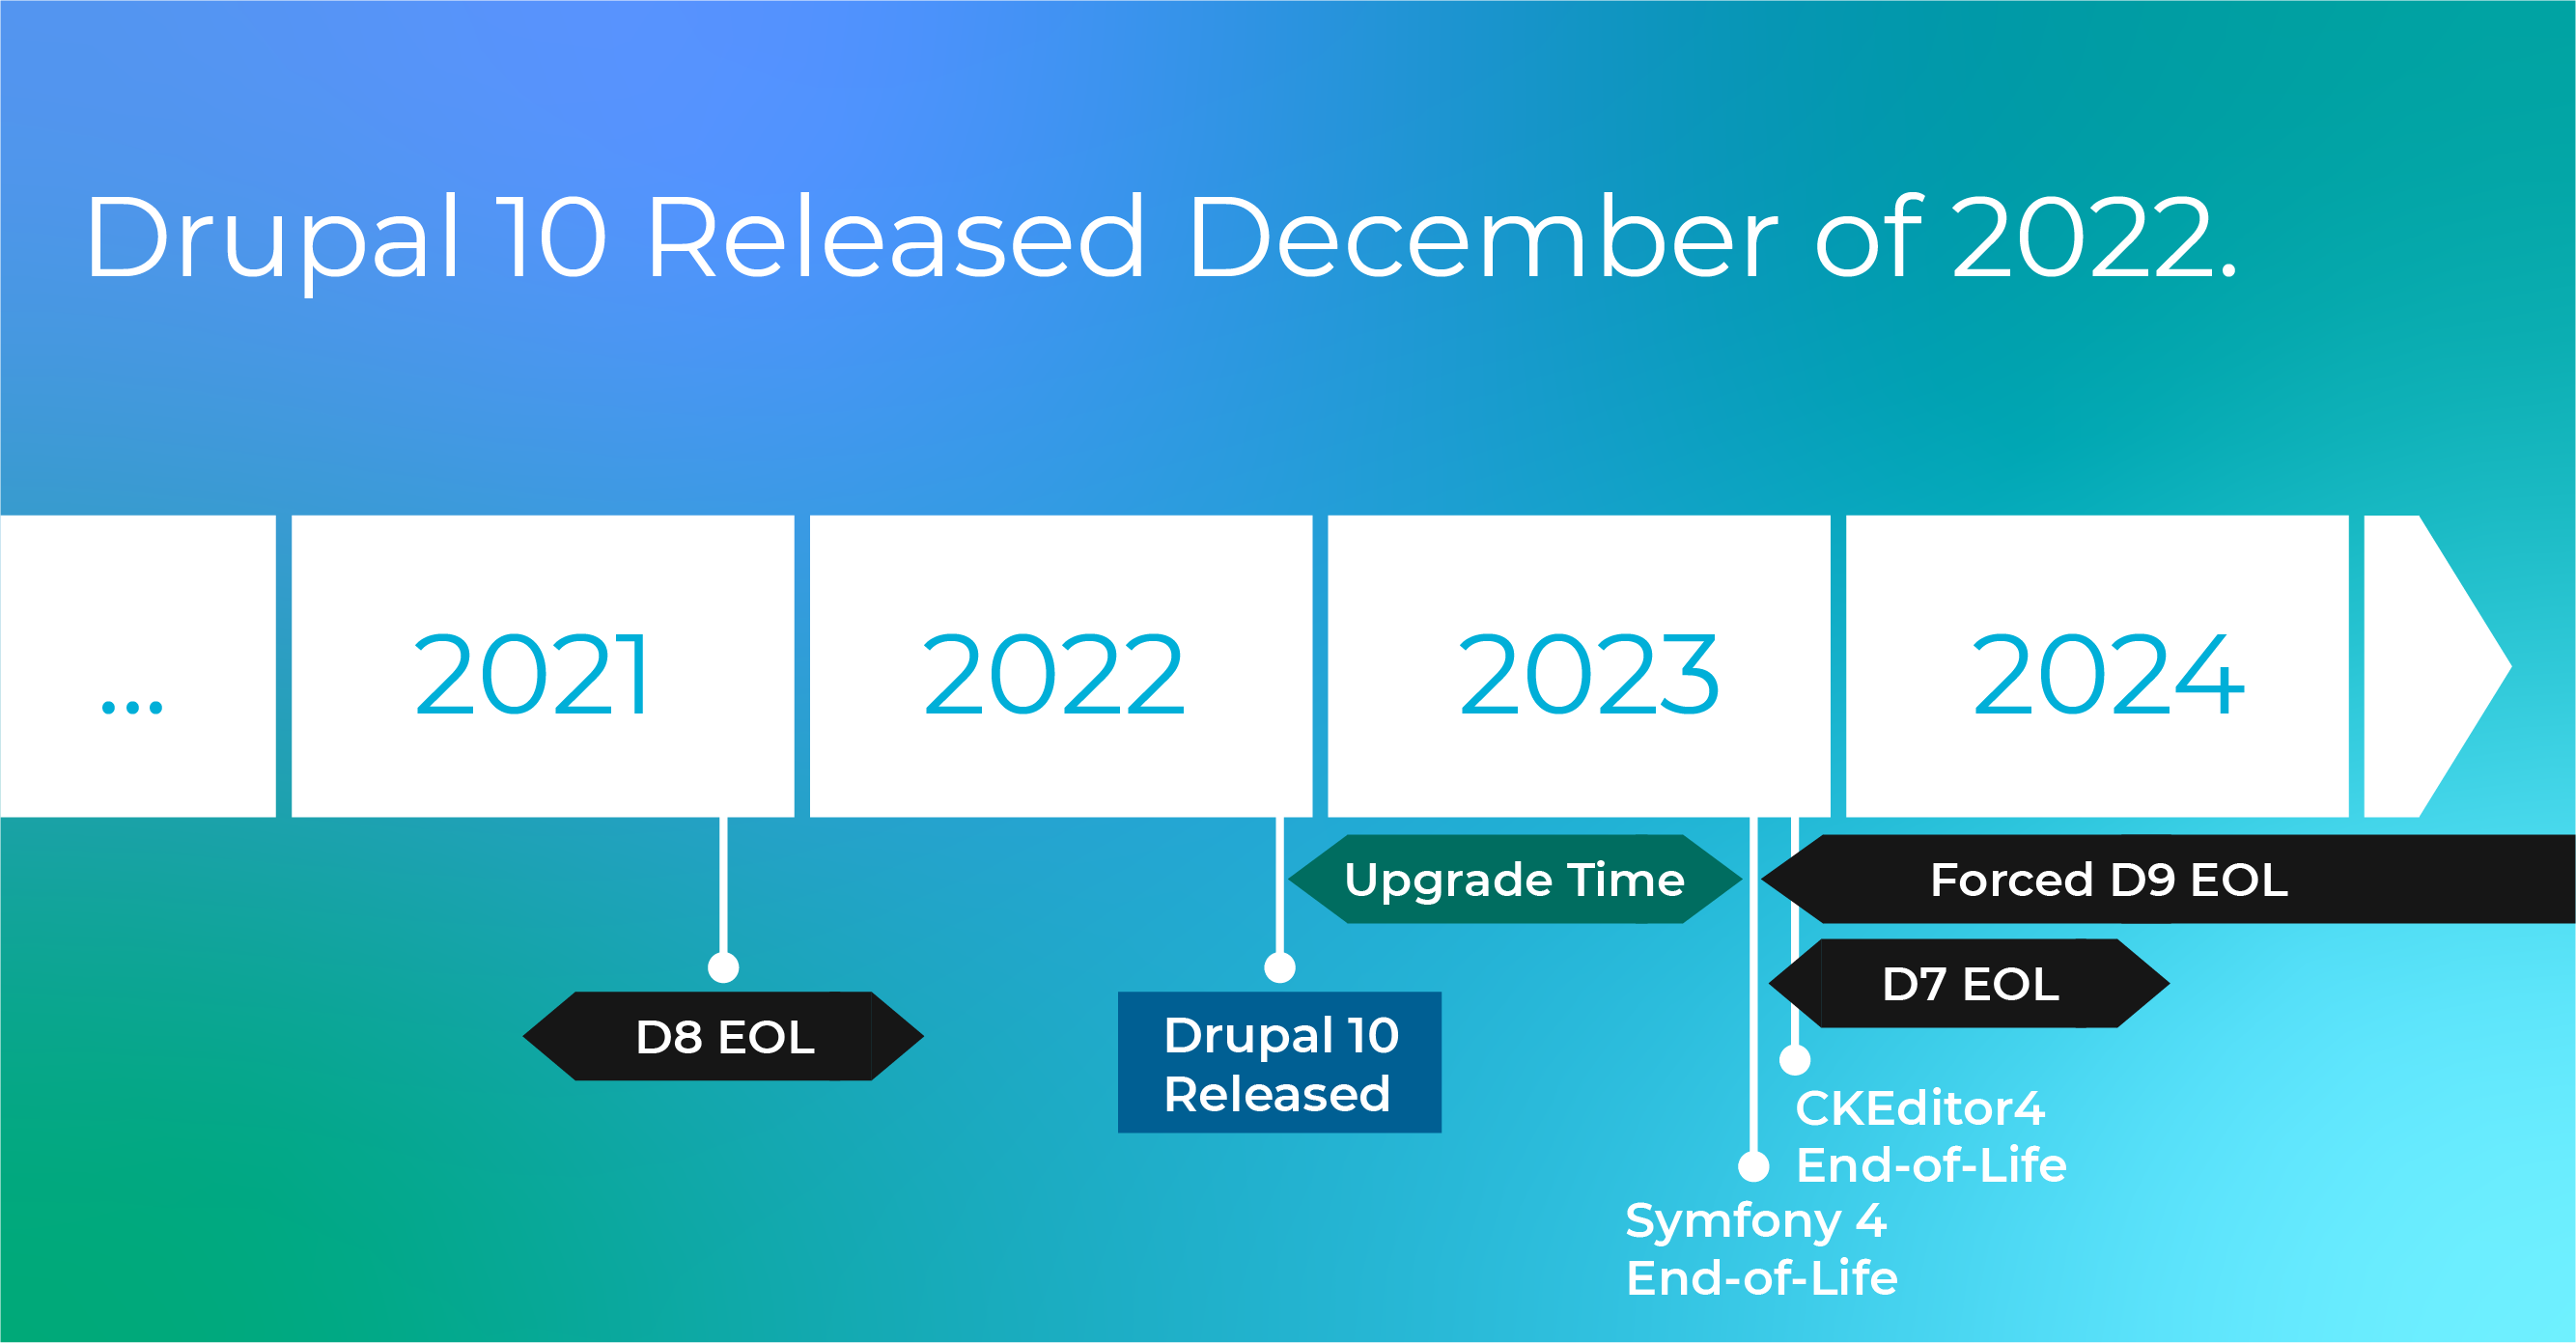 drupal 10 timeline shows end of life for drupal 7 November 2023; D8 November 2021; and D9 November 2023